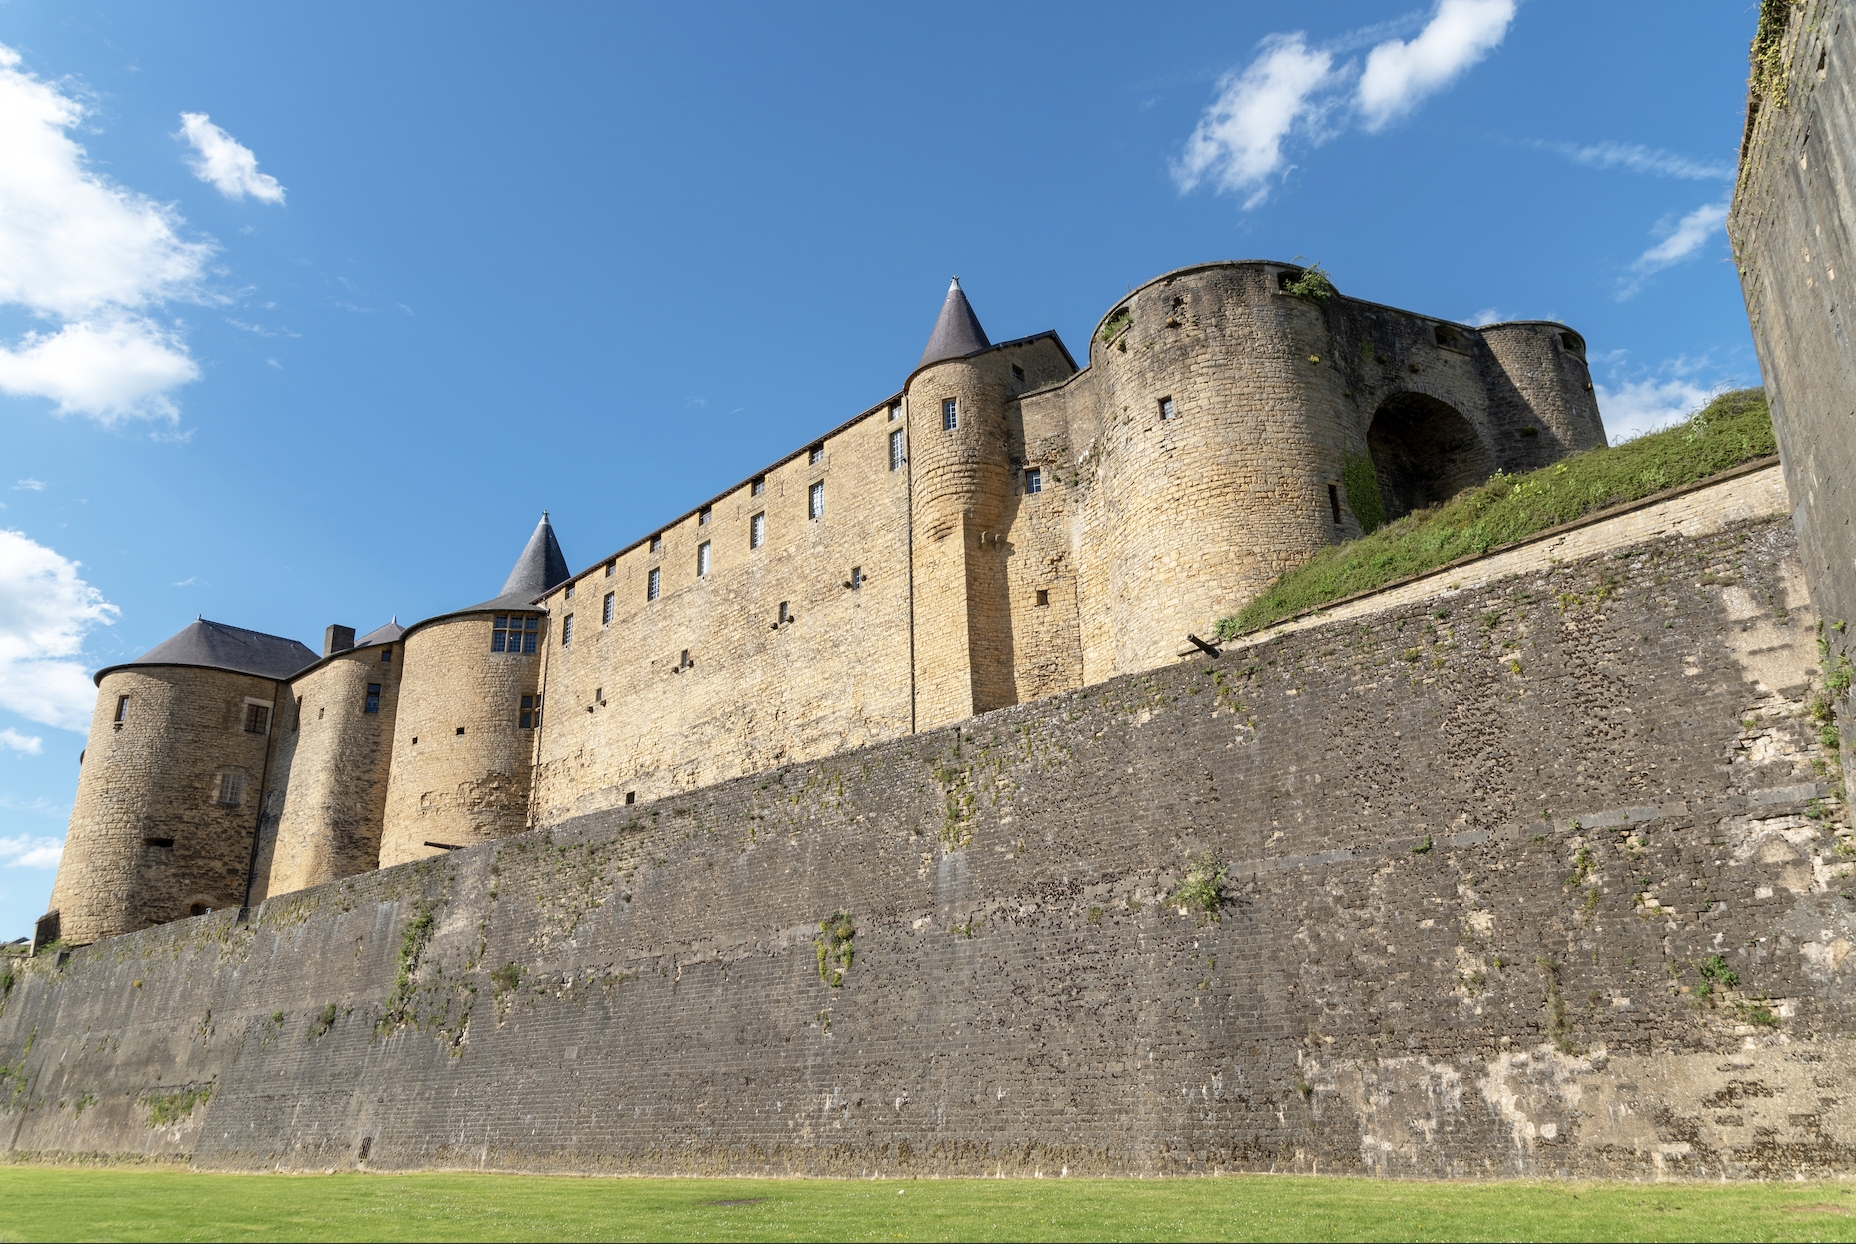 Château fort de Sedan - Réservez votre visite avec Patrivia